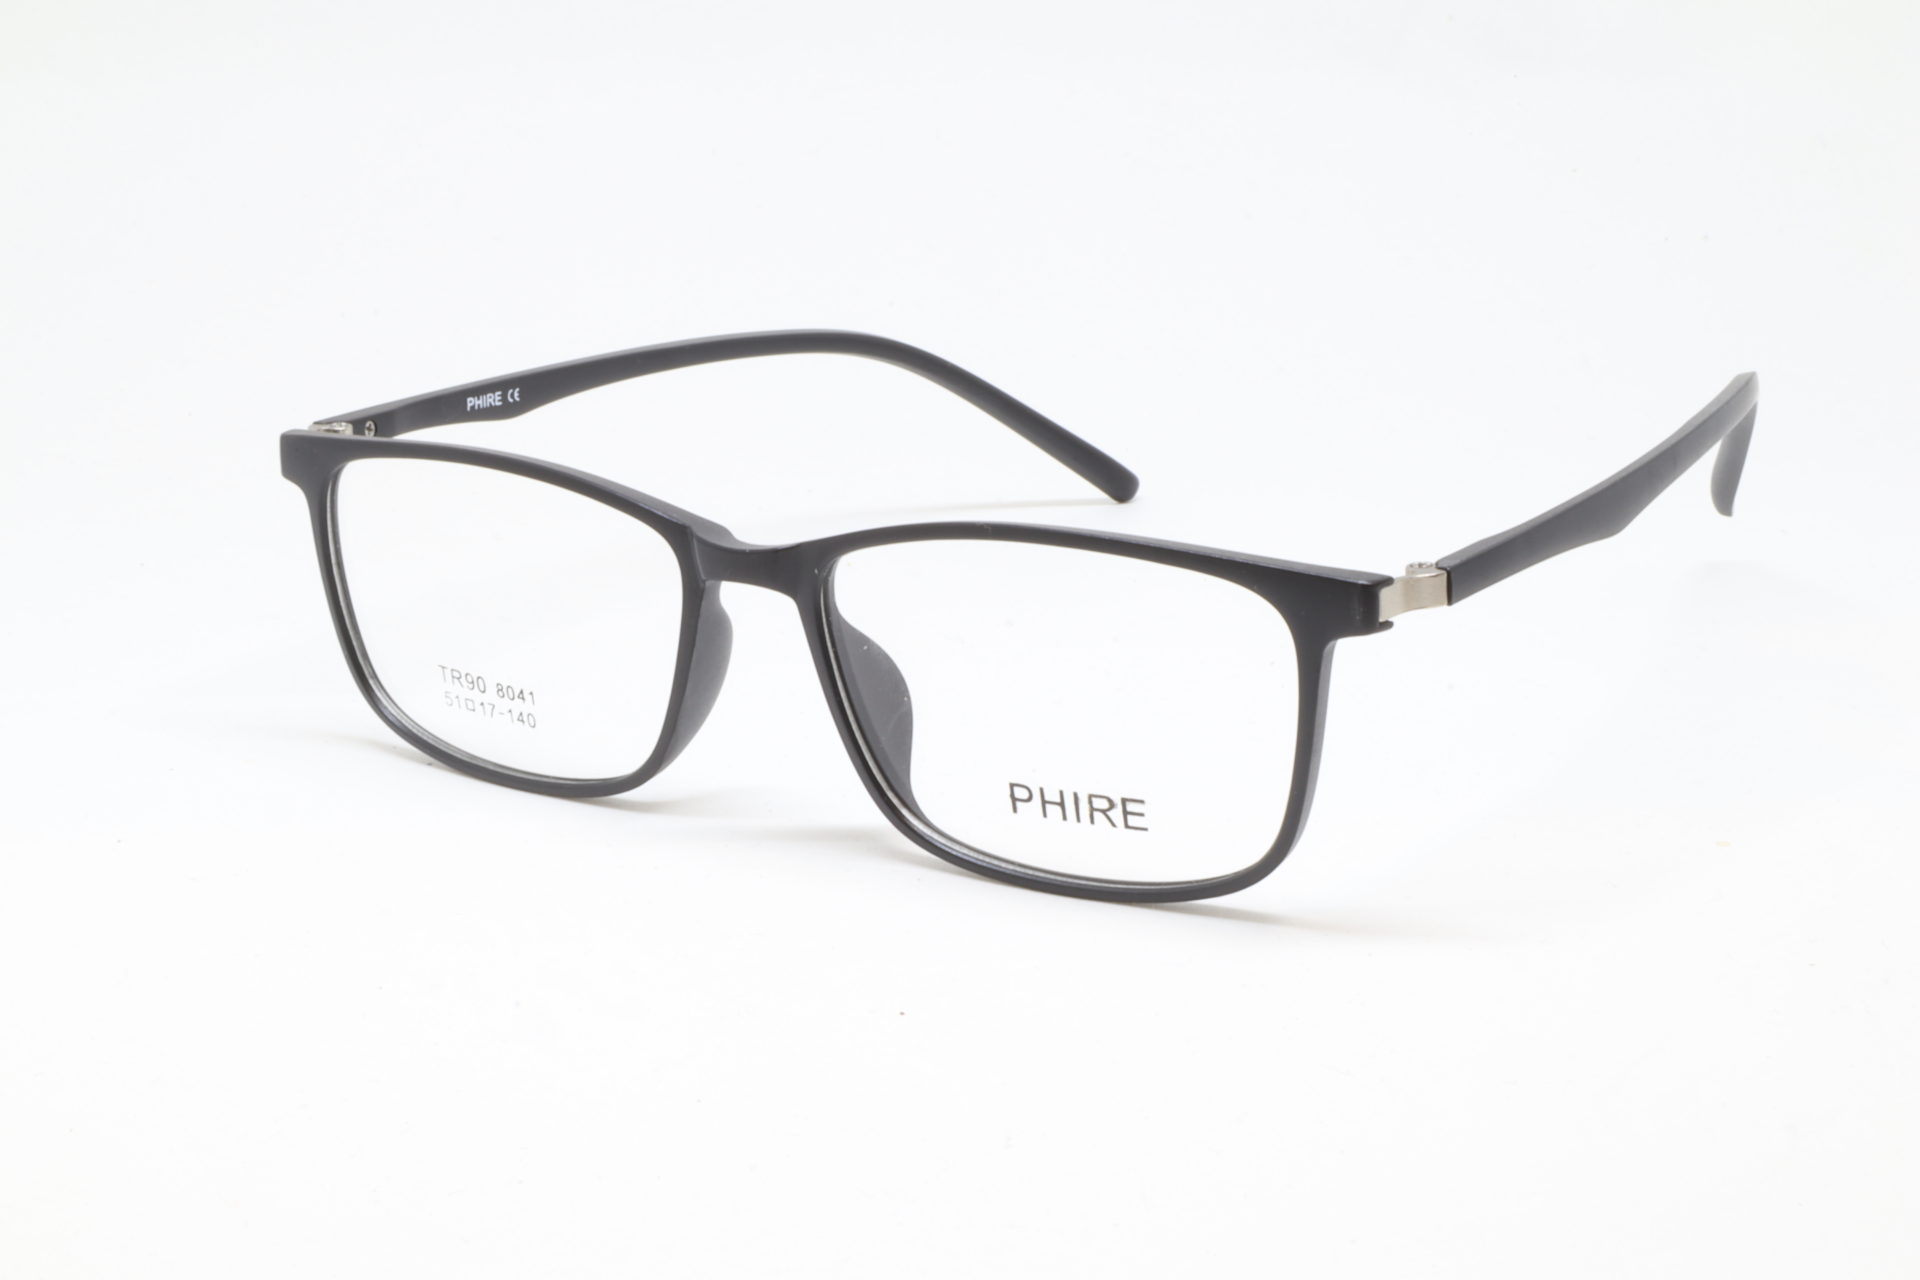 Phire - Symmetry Eyewear